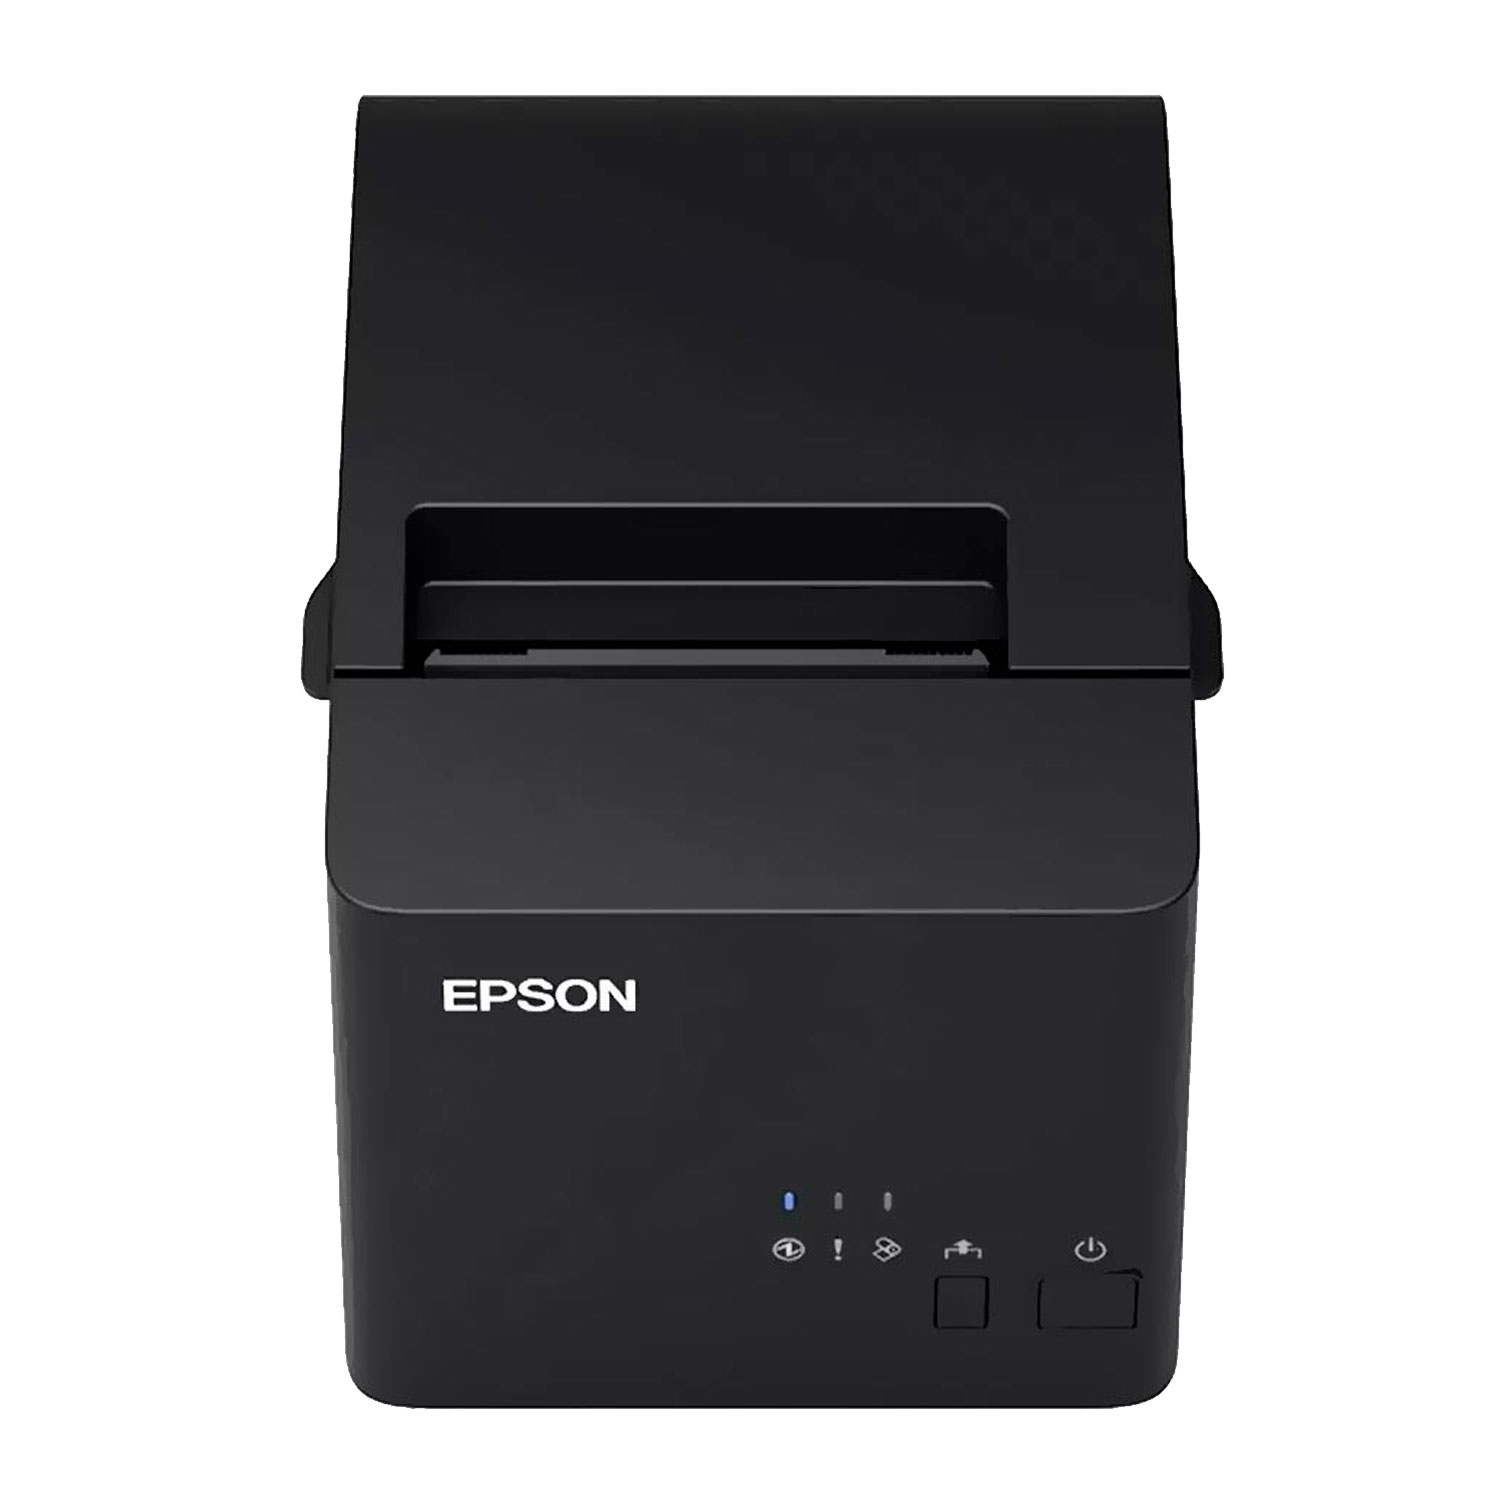 Impressora Térmica Epson TM-T20IIIL-002 Bivolt - Preto